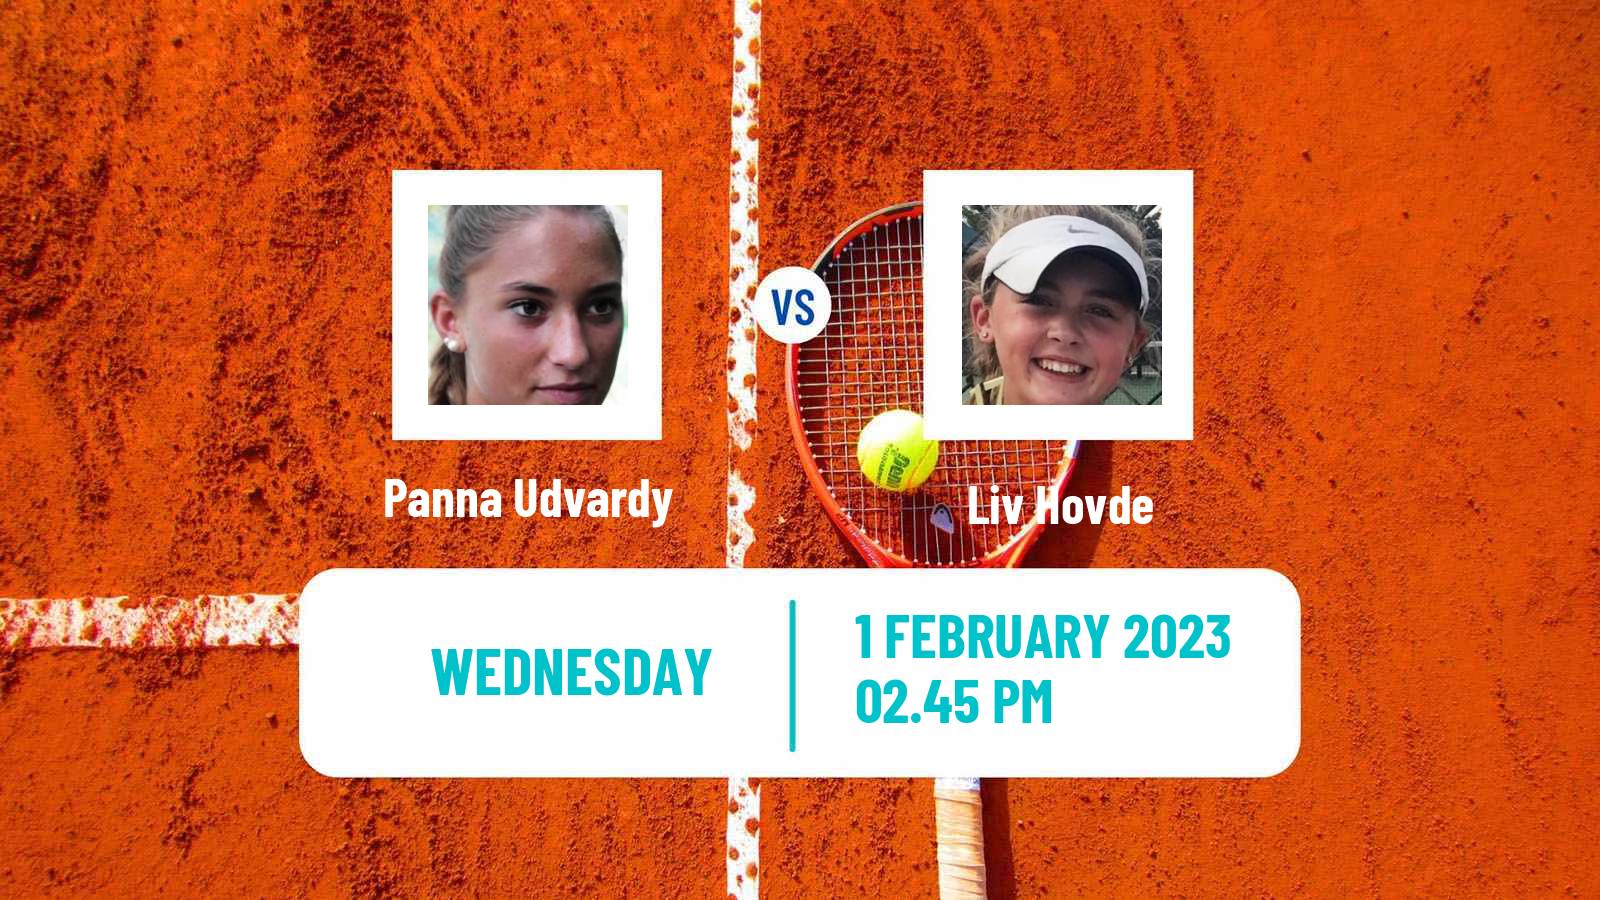 Tennis ITF Tournaments Panna Udvardy - Liv Hovde